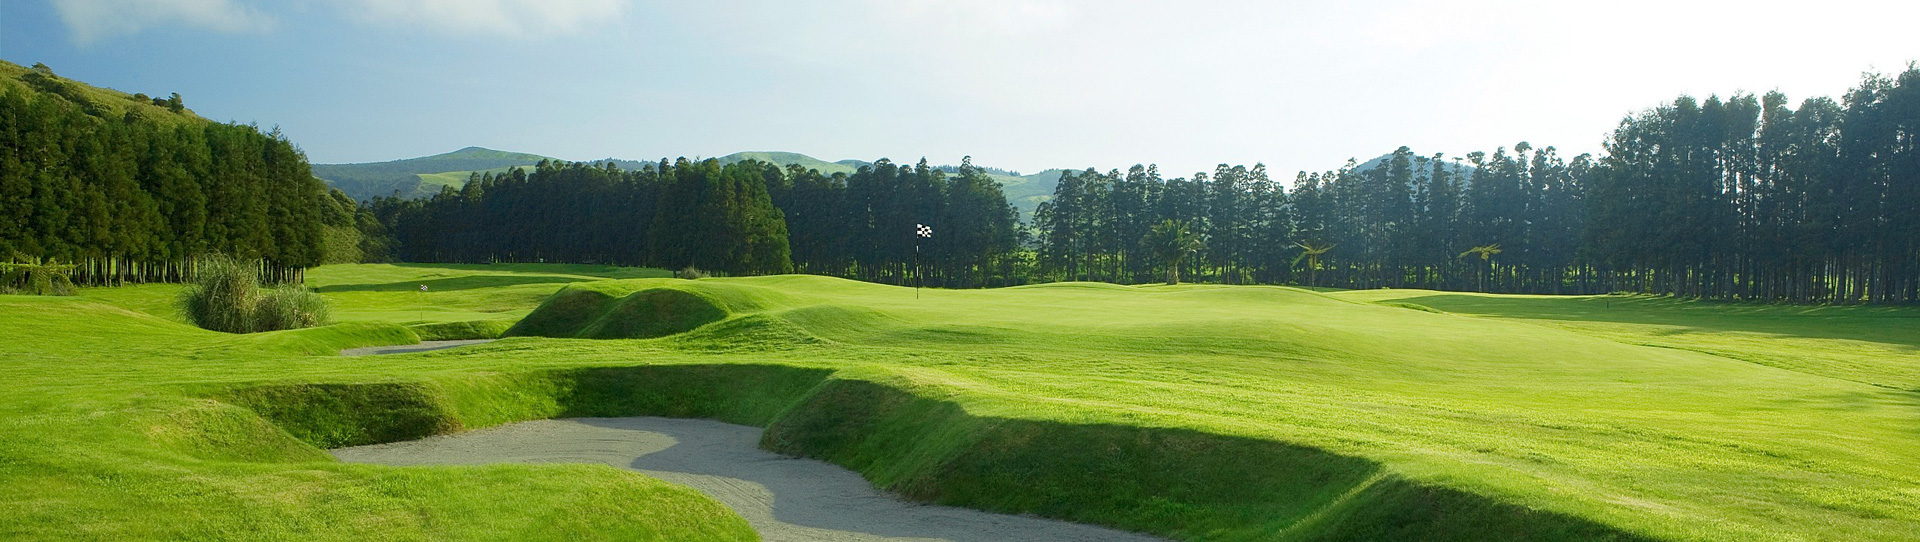 Portugal golf courses - Furnas Golf Course - Photo 2